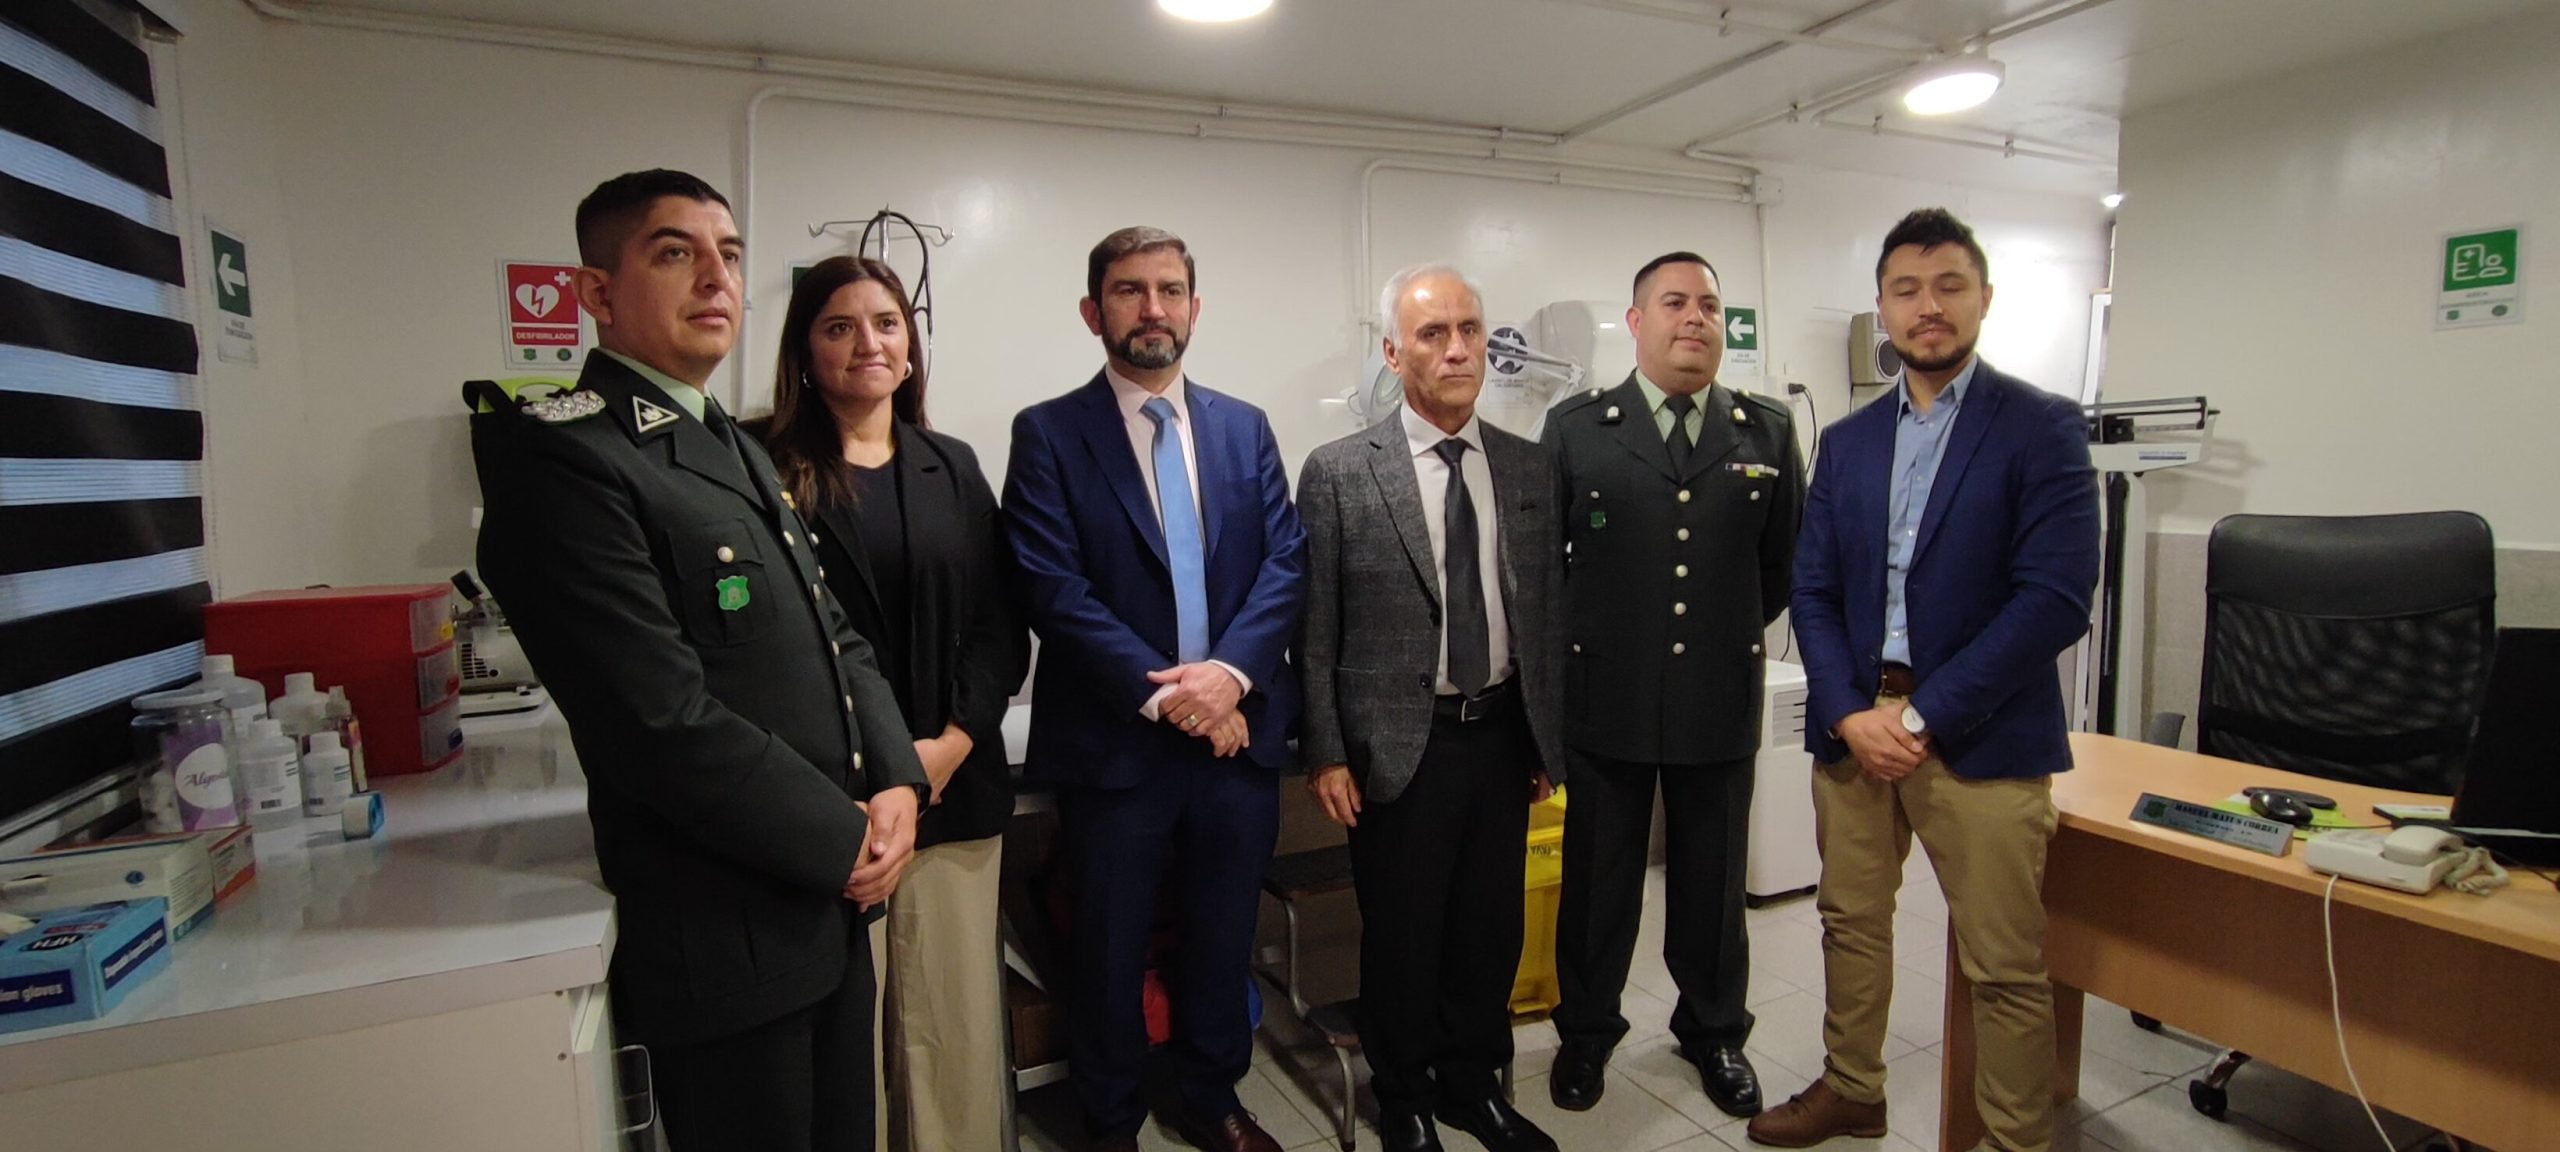 SAN FELIPE: Inauguran nueva unidad de salud en la cárcel de San Felipe